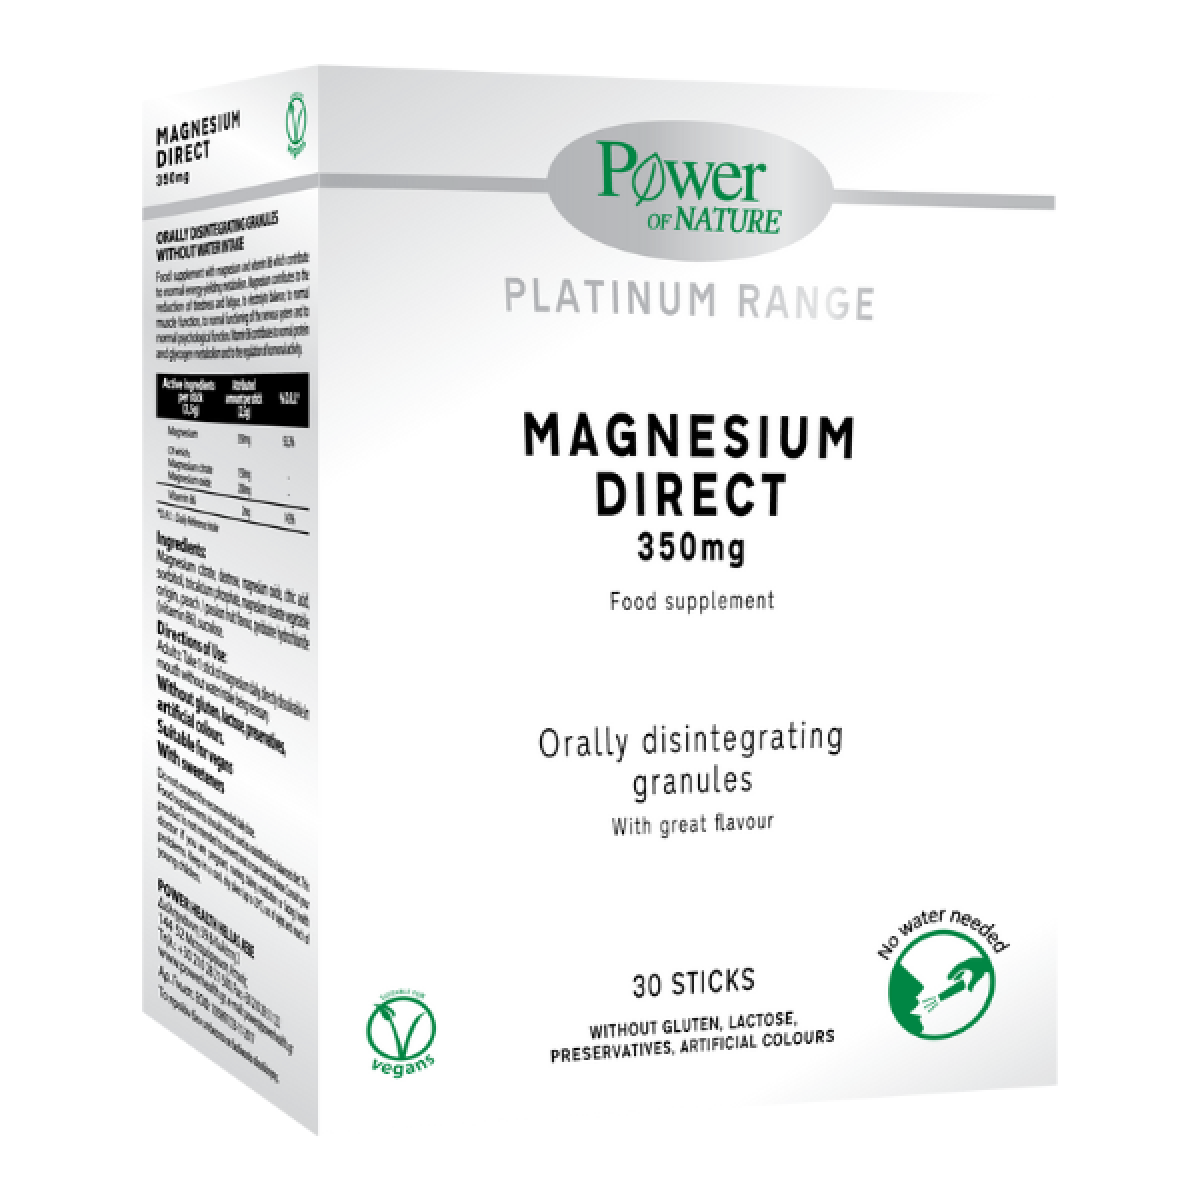 Power Health | Magnesium Direct 350mg |Μαγνήσιο σε Κρυστάλλους που Λιώνουν στο Στόμα | 30 φακελάκια